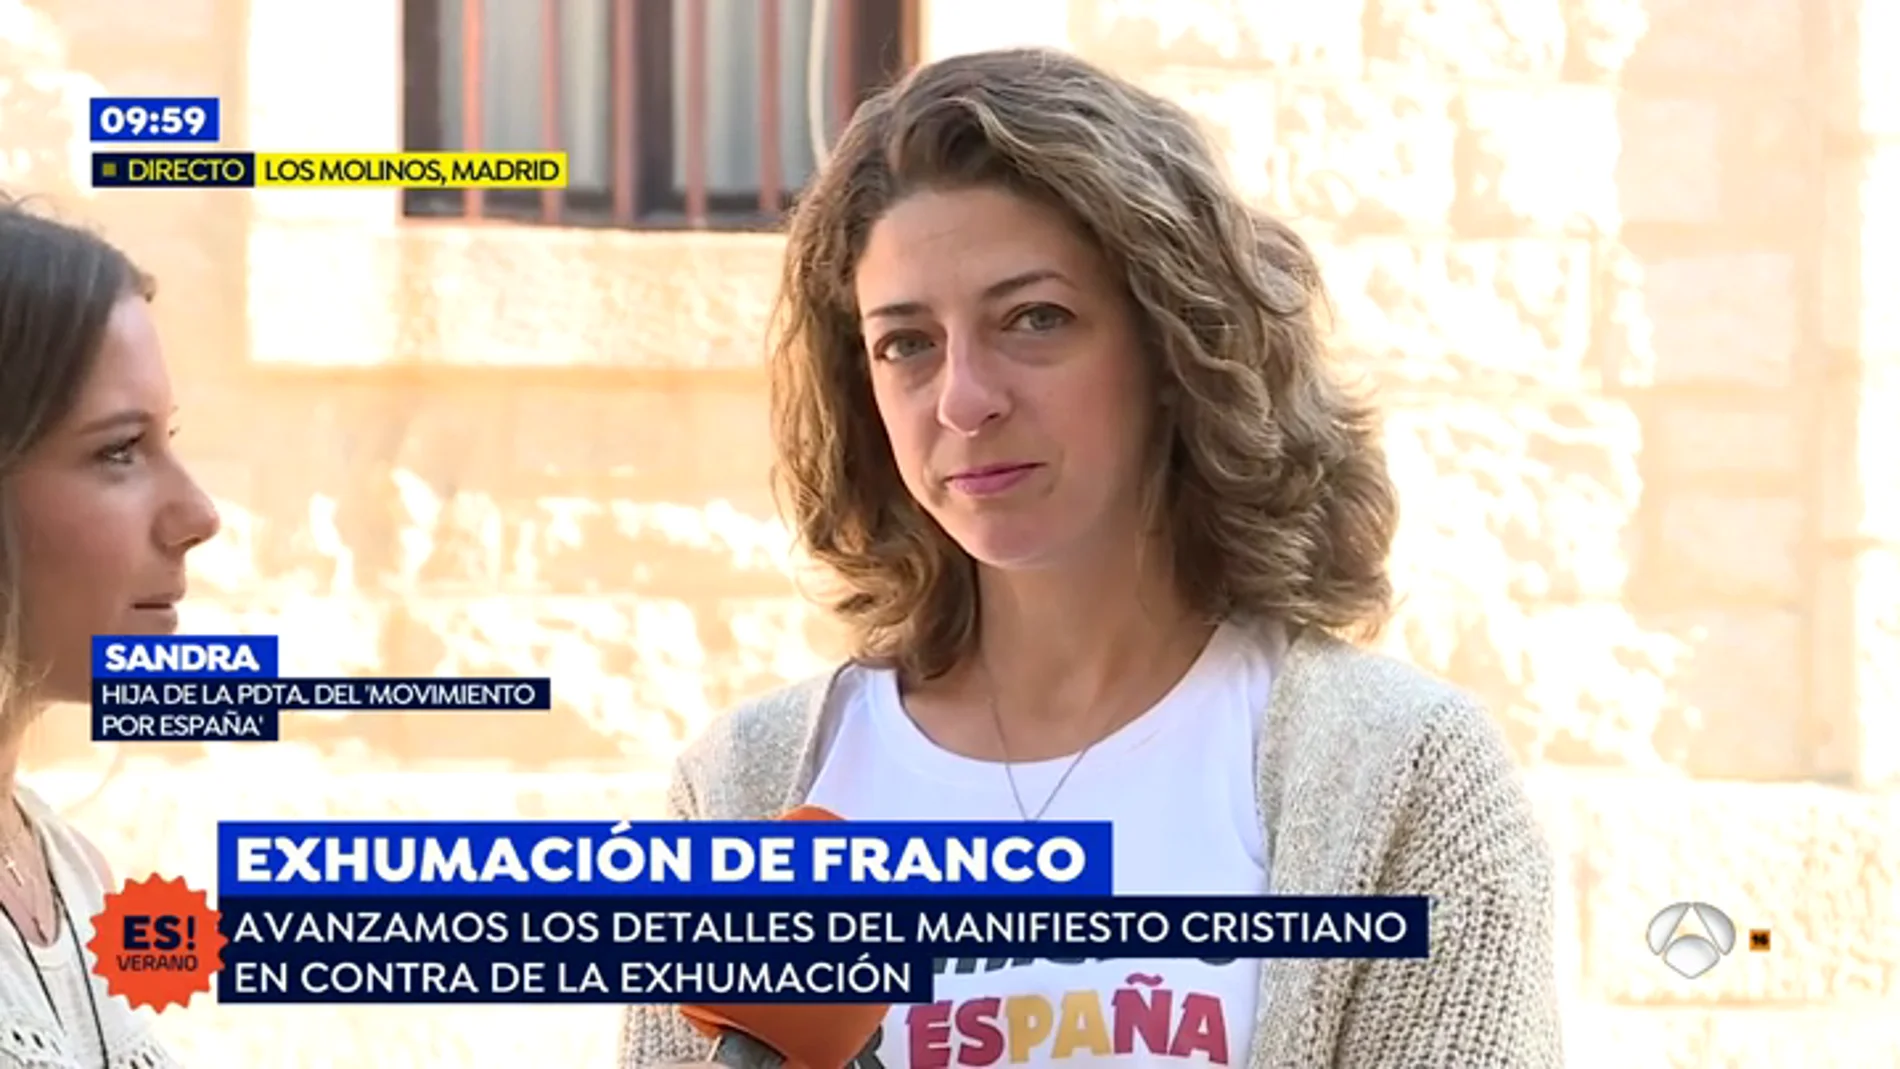 Sandra, hija de la presidenta del 'Movimiento por España': "Hay que agradecer lo que hizo Franco por España y la Iglesia Católica"